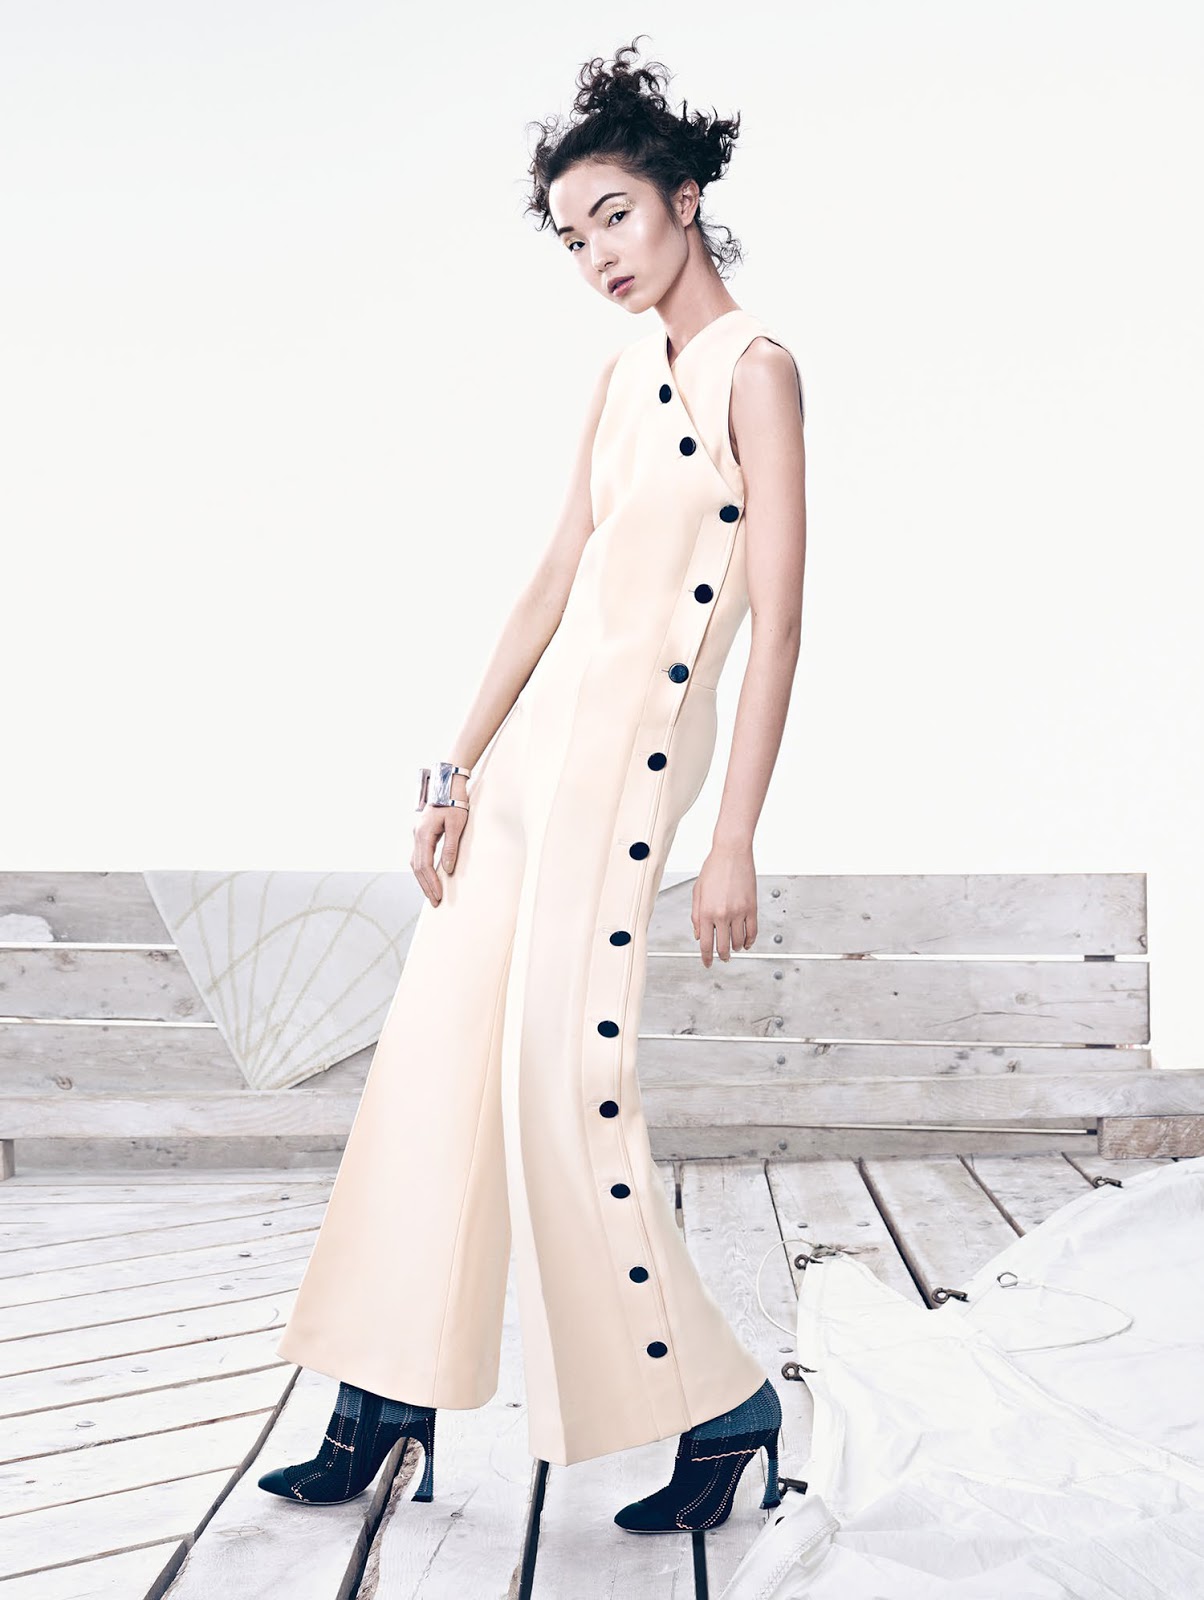 Xiao Wen Ju | Vogue China June 2015 | IMG Models